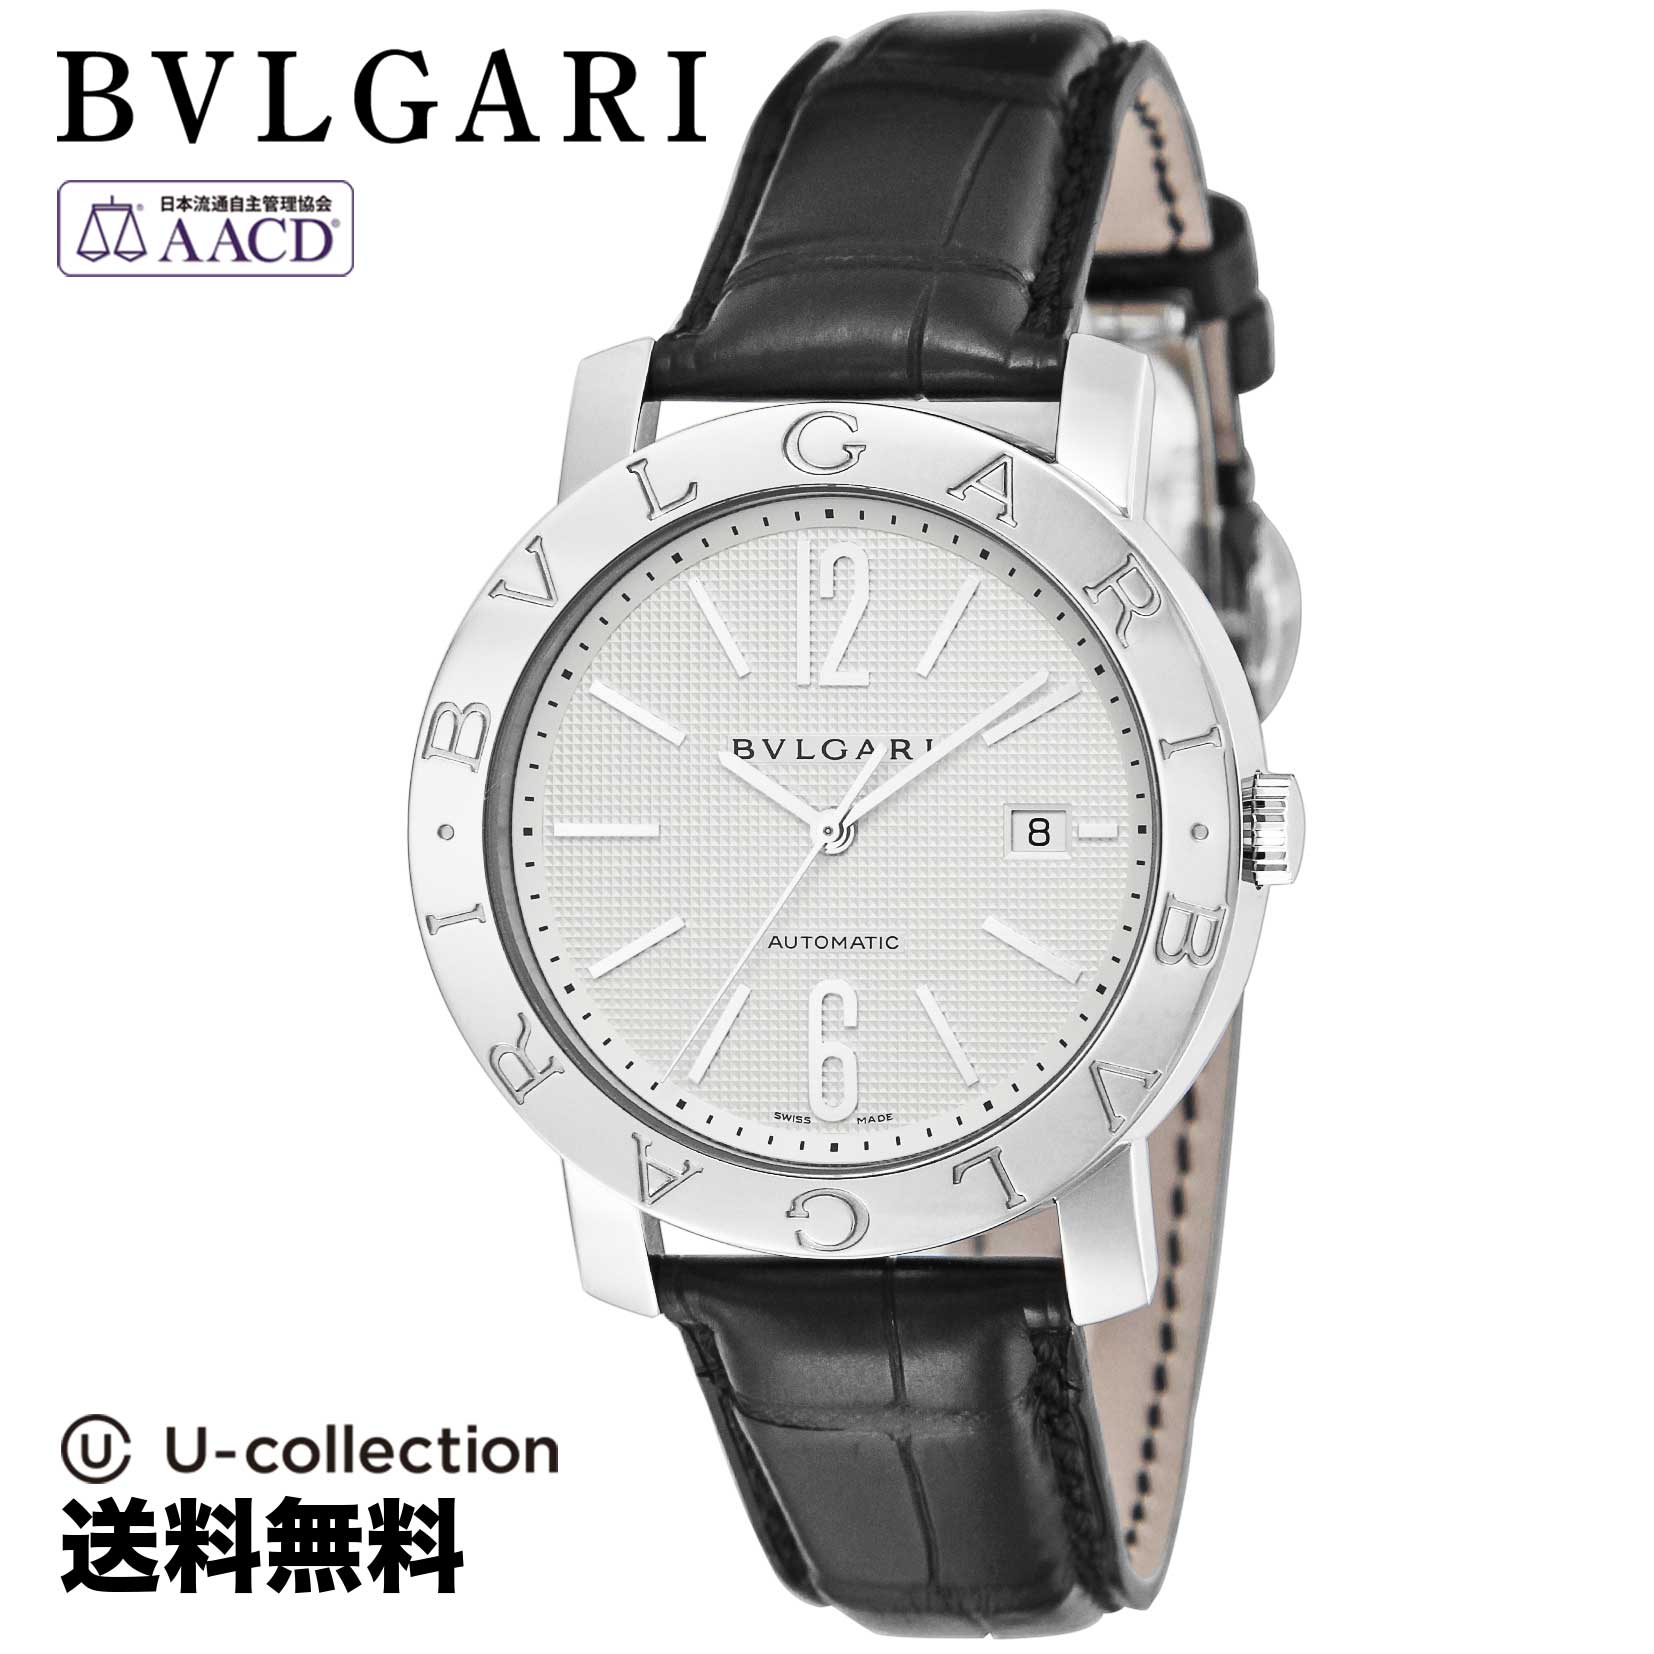 ブルガリ【腕時計】 BVLGARI(ブルガリ) Bvlgari Bvlgari / ブルガリブルガリ メンズ ホワイト 自動巻 BB42WSLDAUTO 時計 ブランド